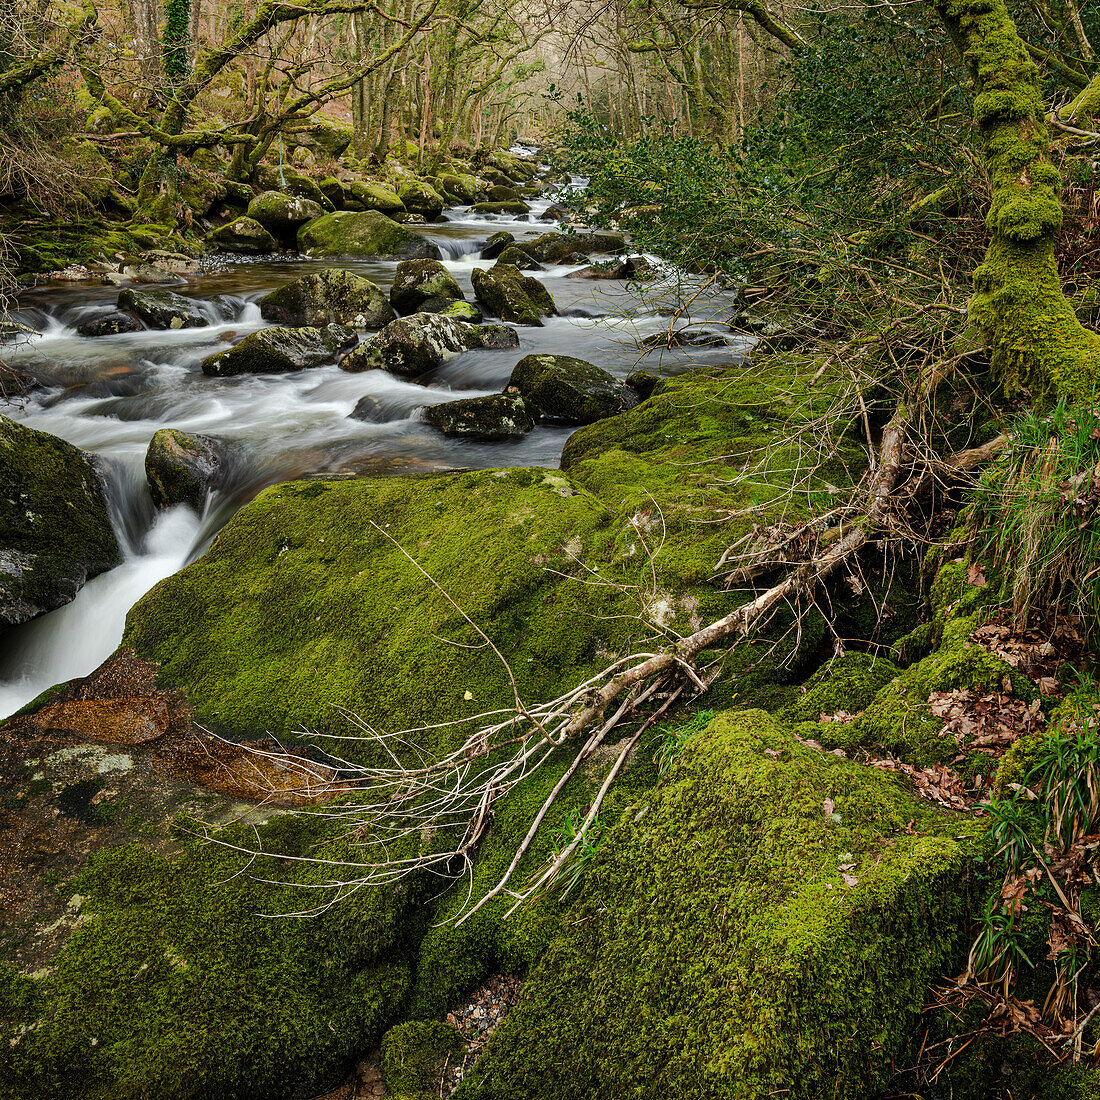 Moosbewachsene Felsbrocken und Bäume entlang des Flusses Plym, Dewerstone, Dartmoor National Park, Devon, England, Vereinigtes Königreich, Europa